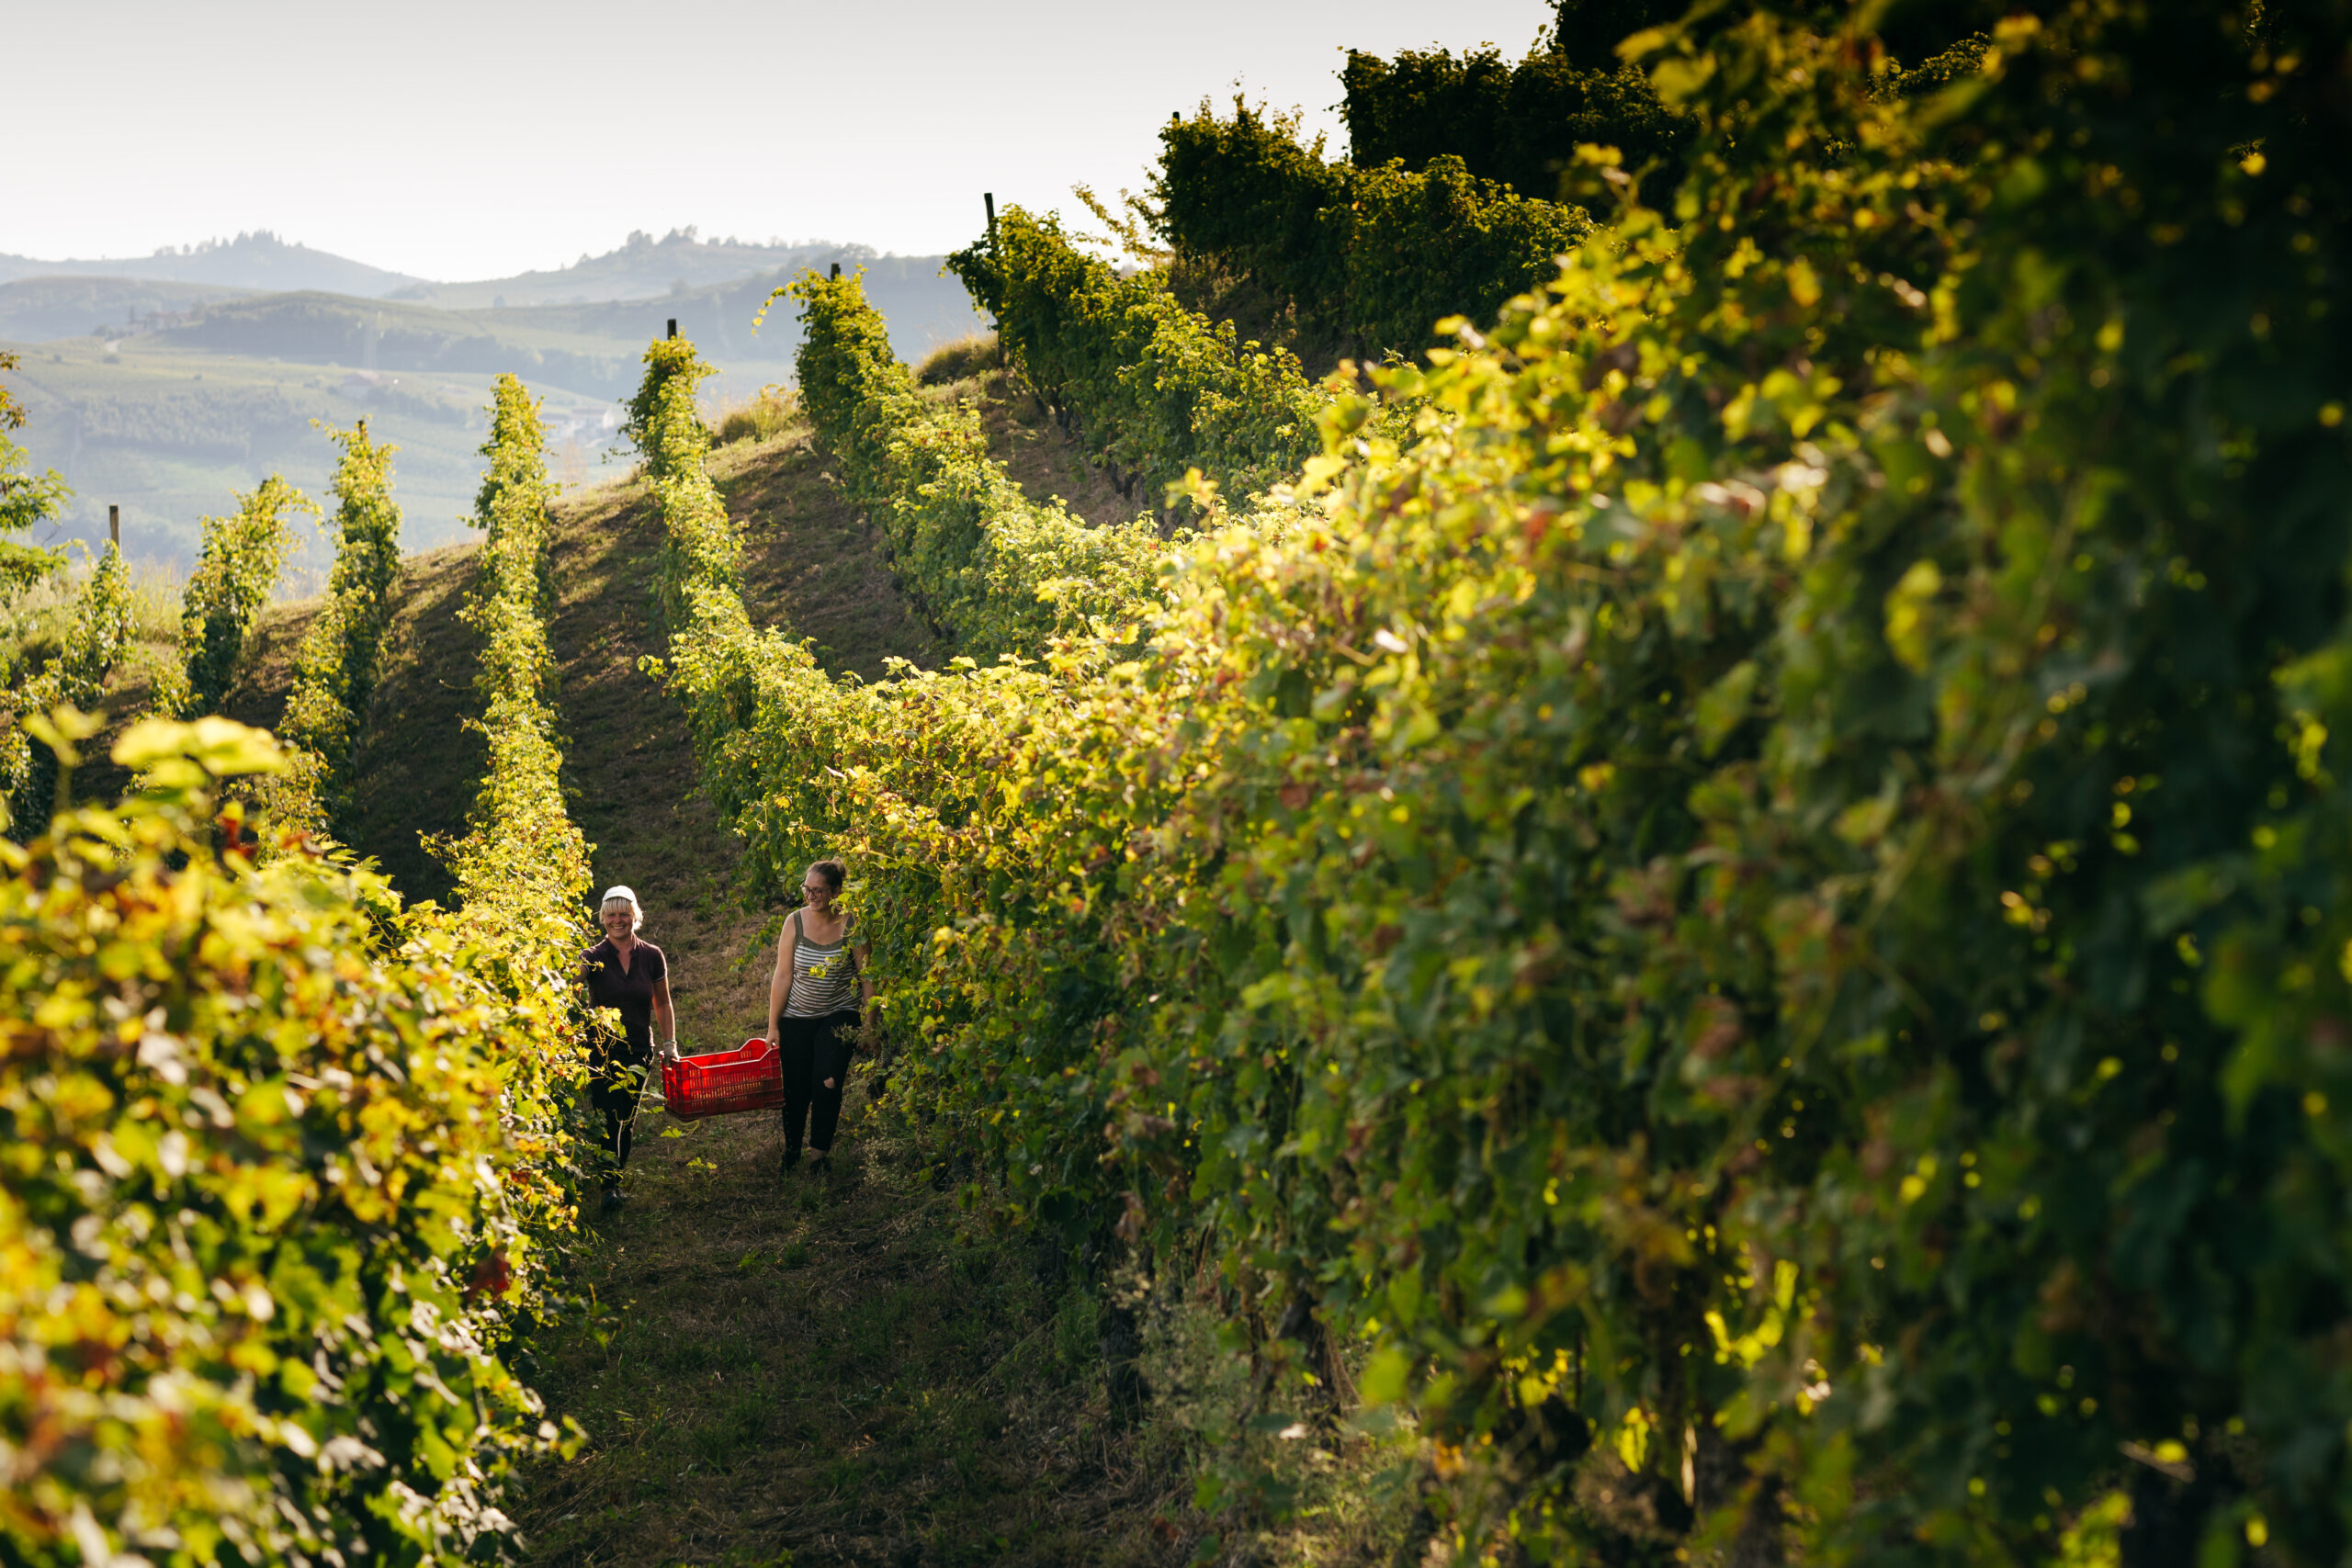 Beppe Marino una realtà piemontese dal 1972 vini di qualità, foto da sito